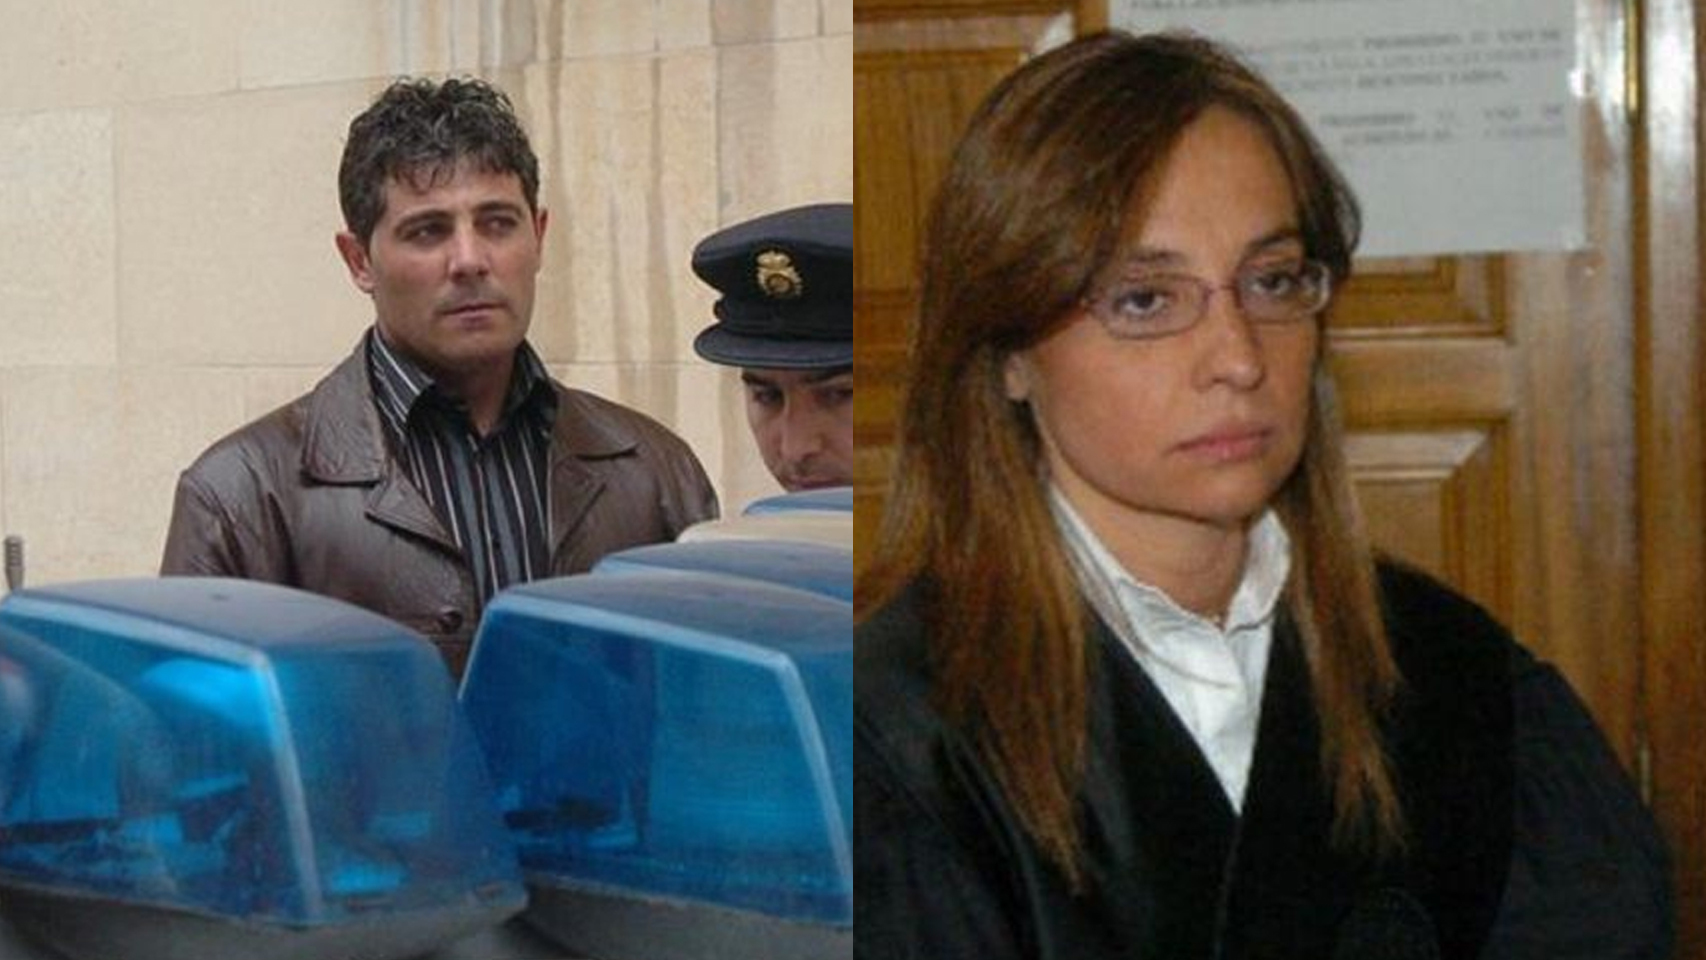 Rebeca Santamalia Cáncer, la abogada asesinada, y José Javier Salvador Calvo, el presunto asesino